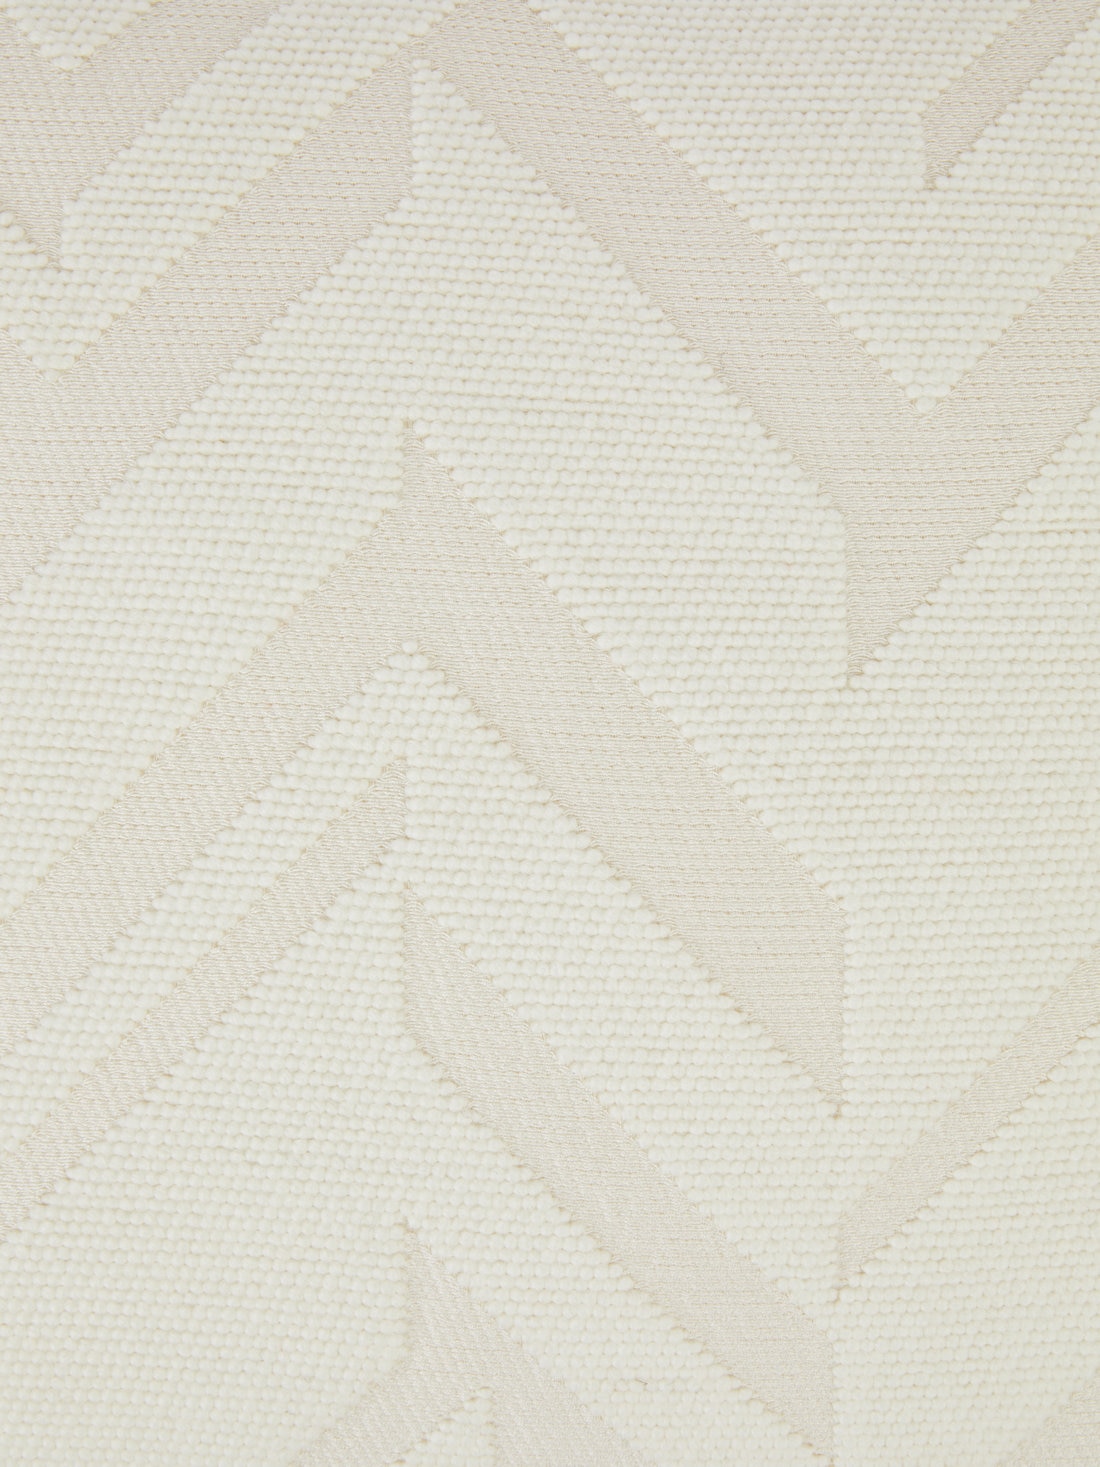 Orme クッション 40x40cm 3Dエフェクトジャカード織り, ホワイト  - 8051575837364 - 3